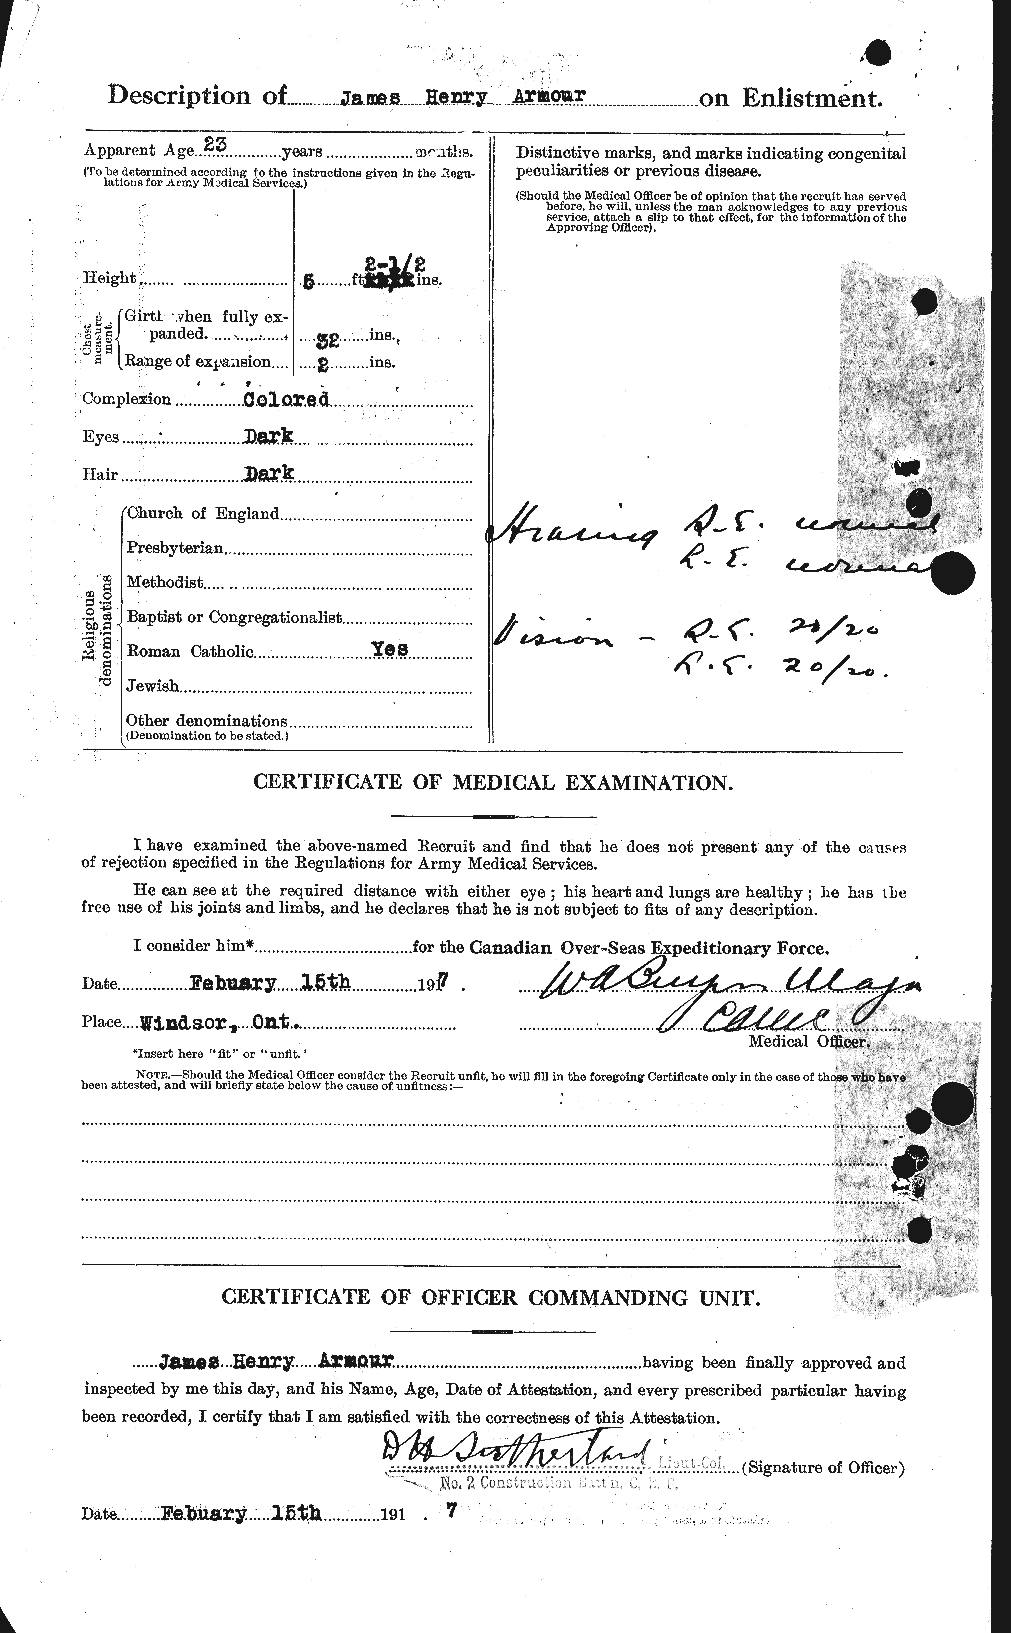 Dossiers du Personnel de la Première Guerre mondiale - CEC 213309b